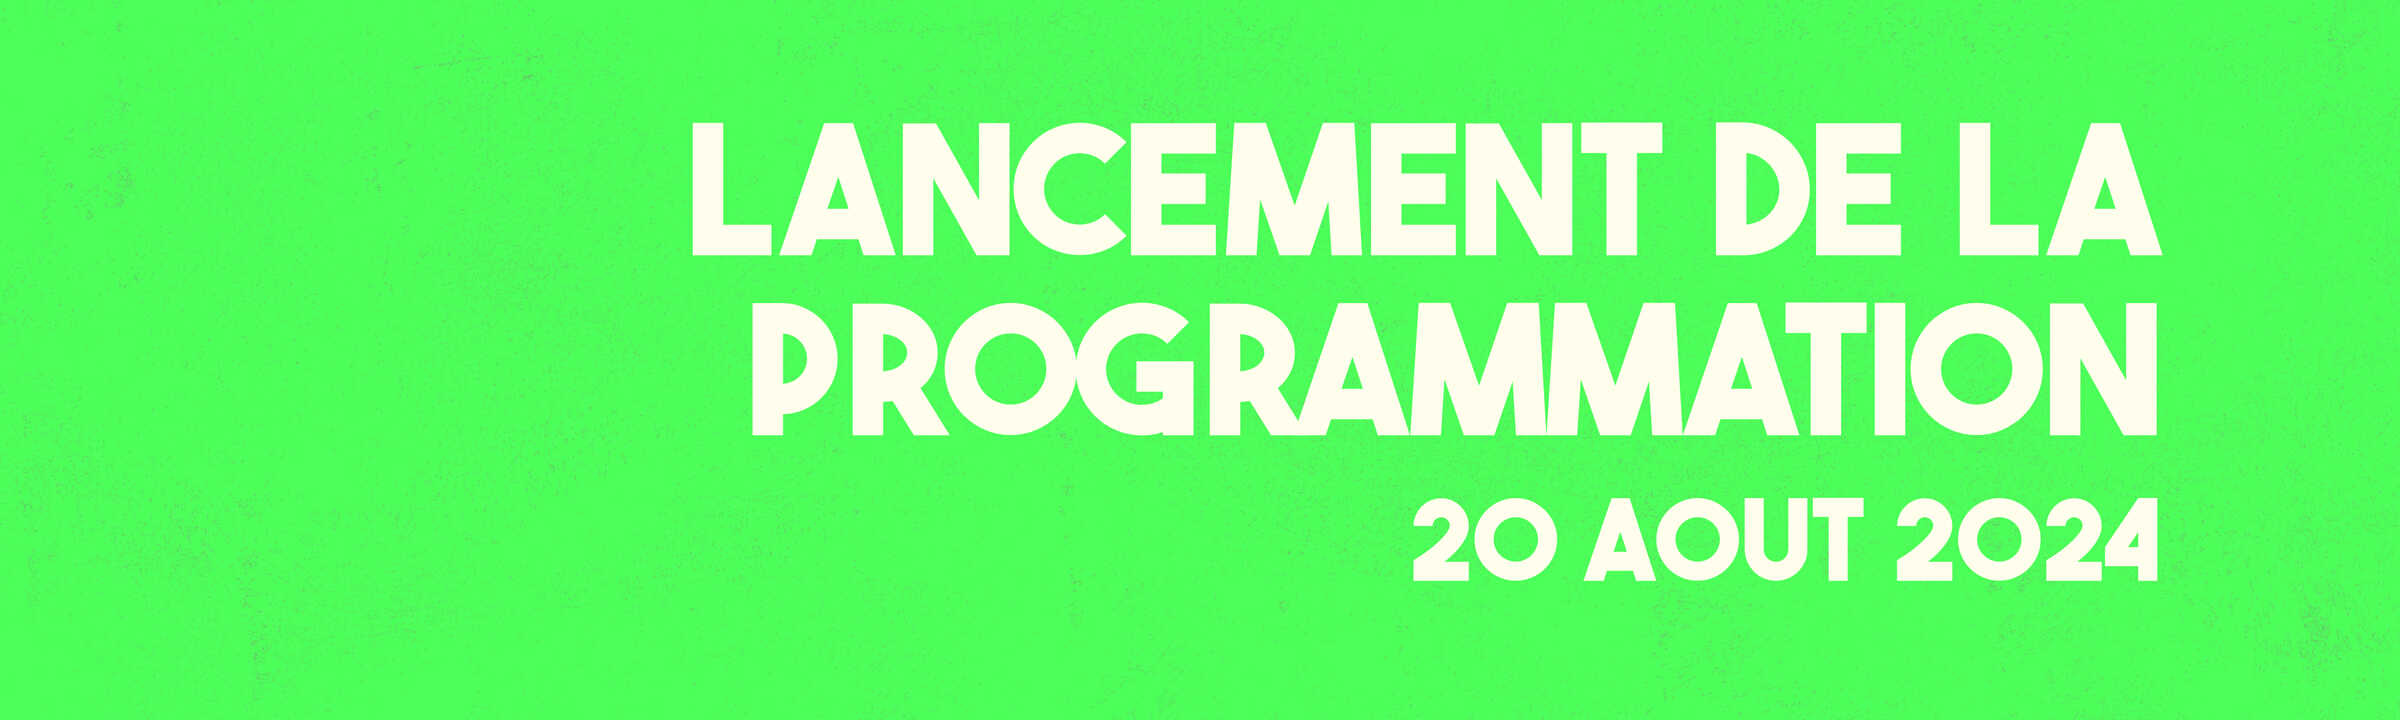 FMC - Lancement de la programmation le 20 août 2024